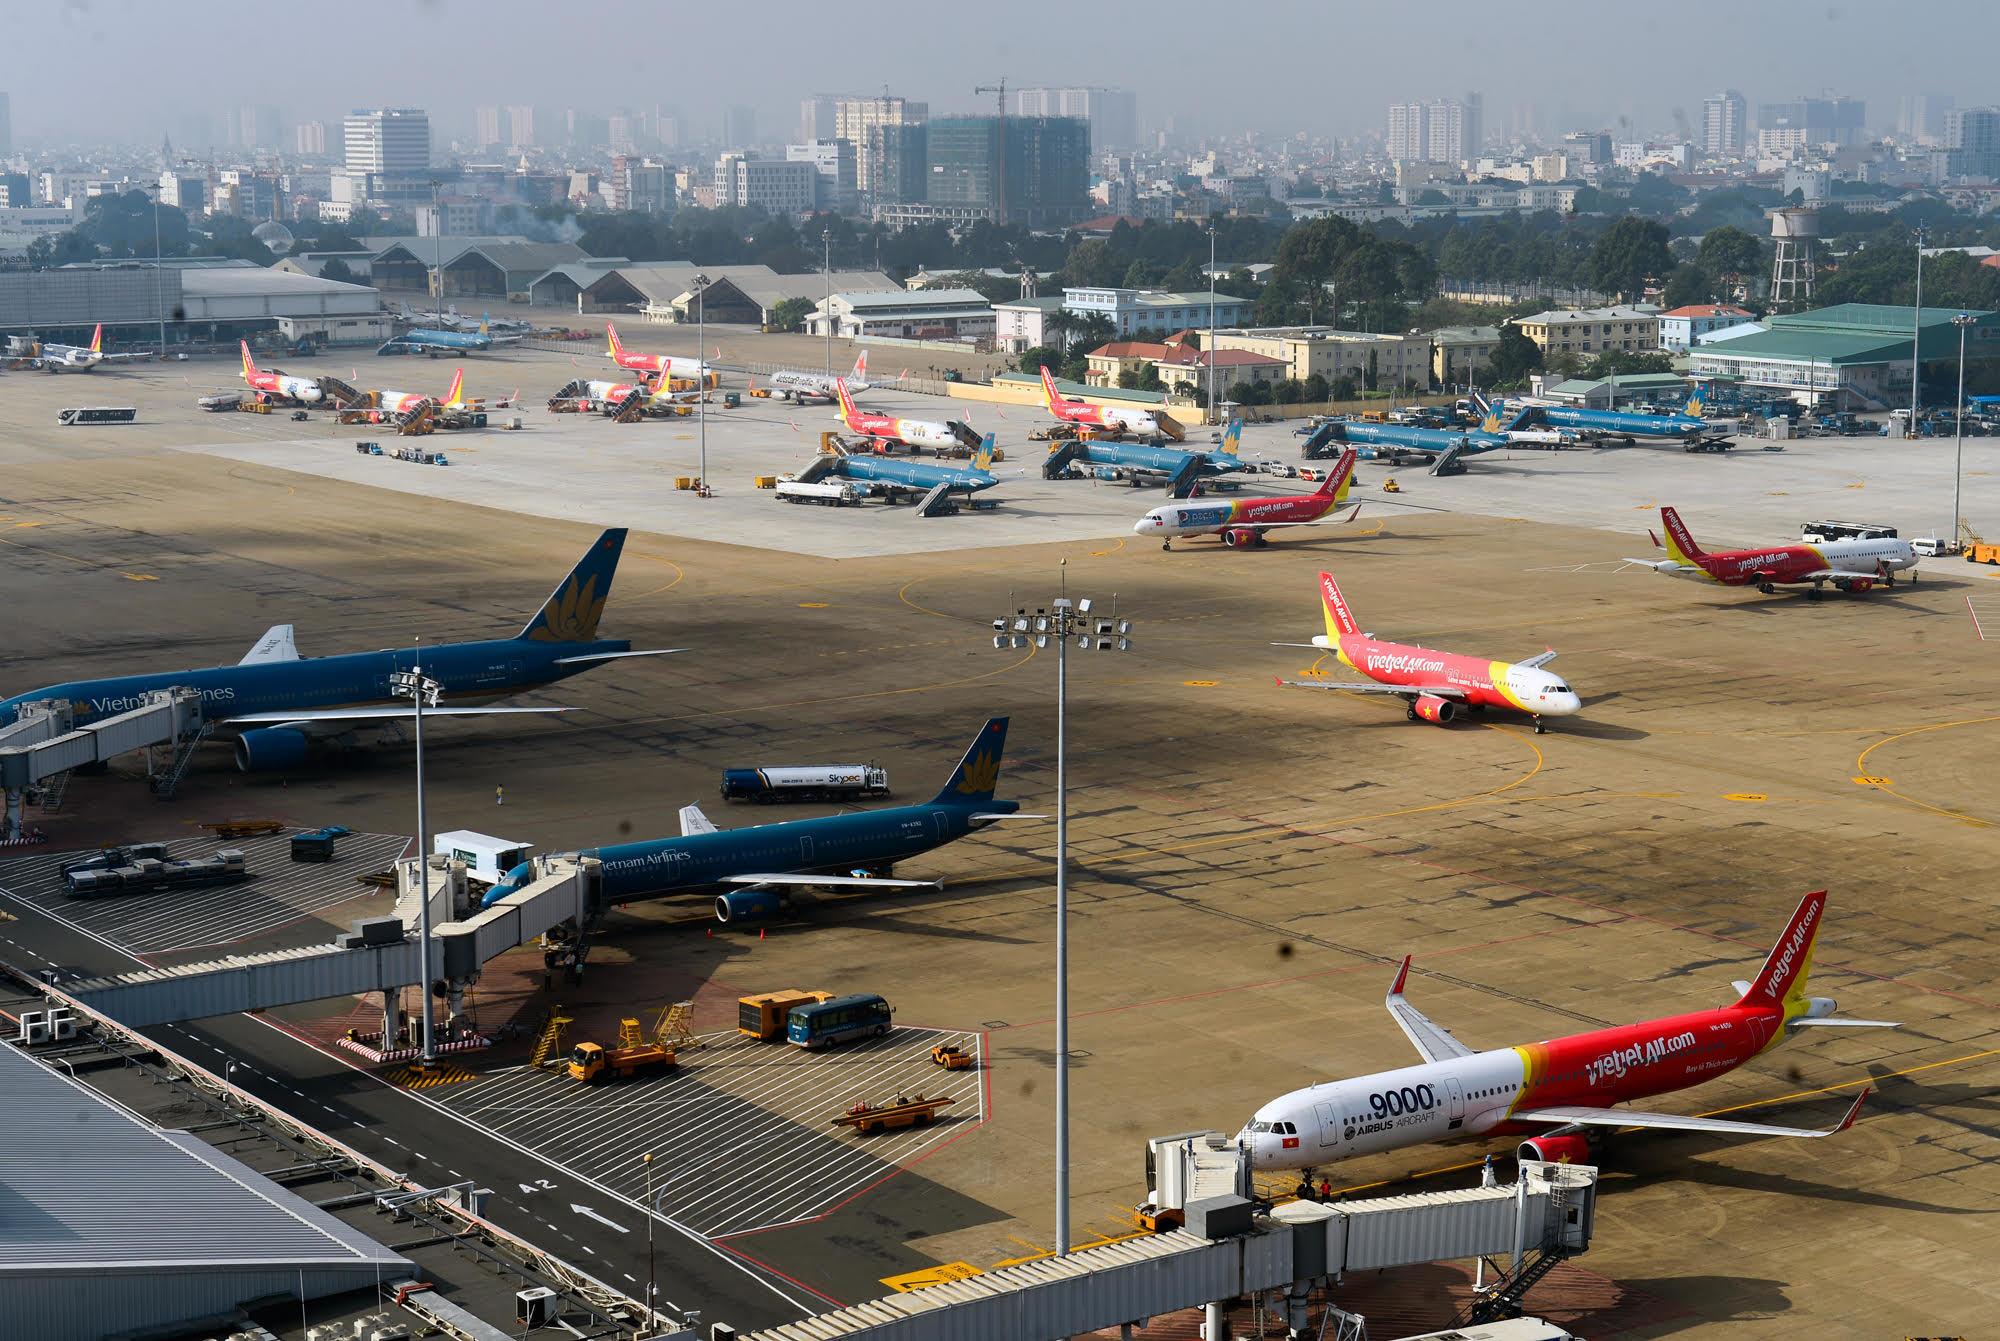 Thị trường hàng không hiện có sự tham gia khai thác của 5 hãng hàng không Việt Nam và hơn 70 hãng hàng không nước ngoài